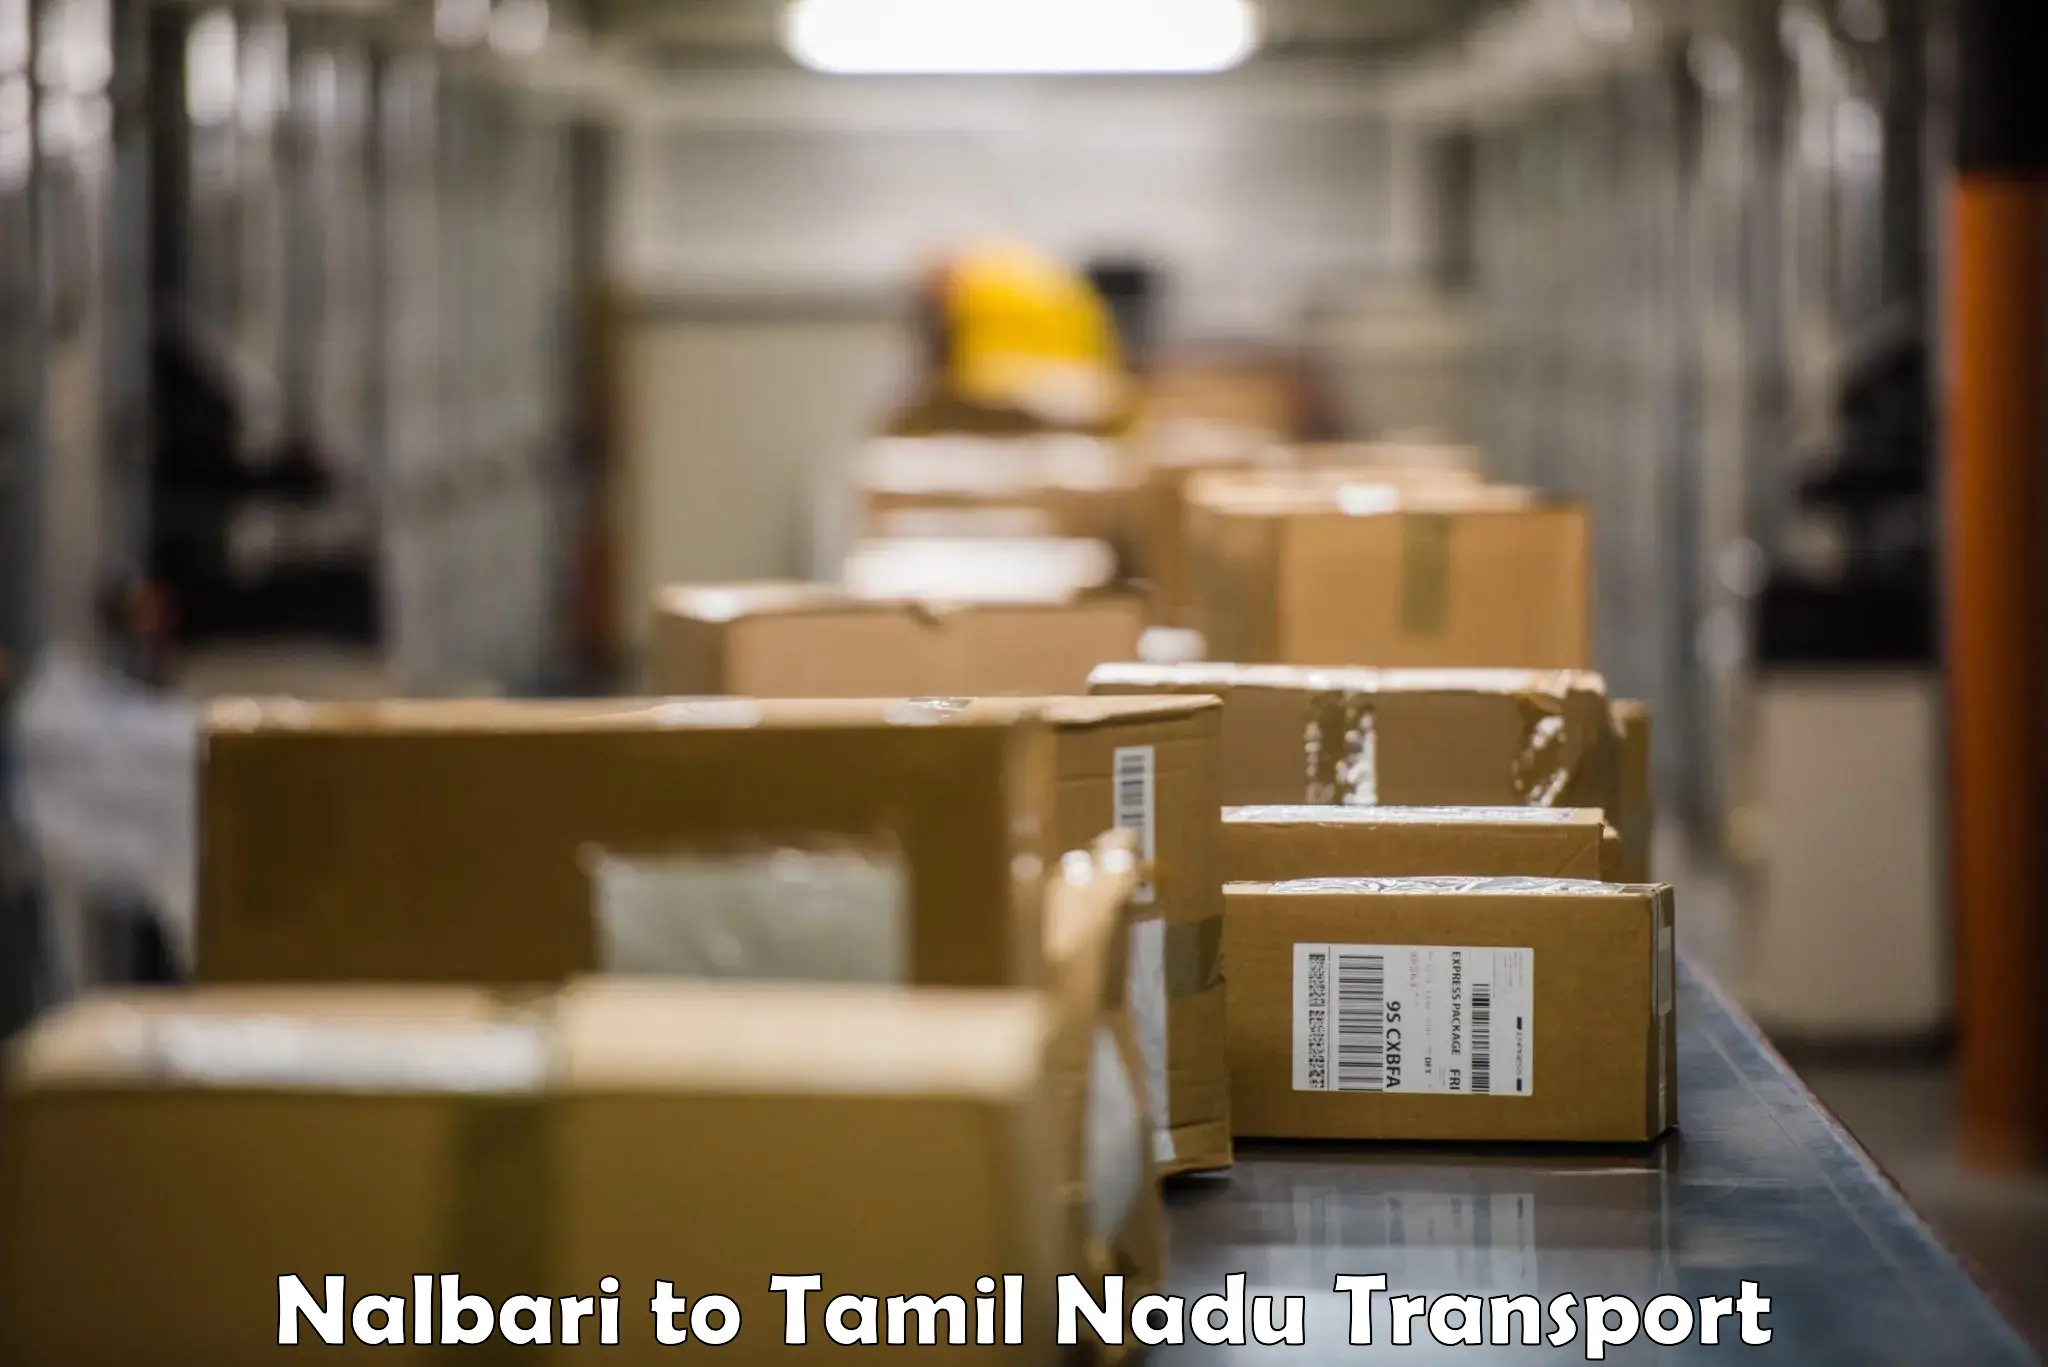 Shipping partner Nalbari to Sriperumbudur